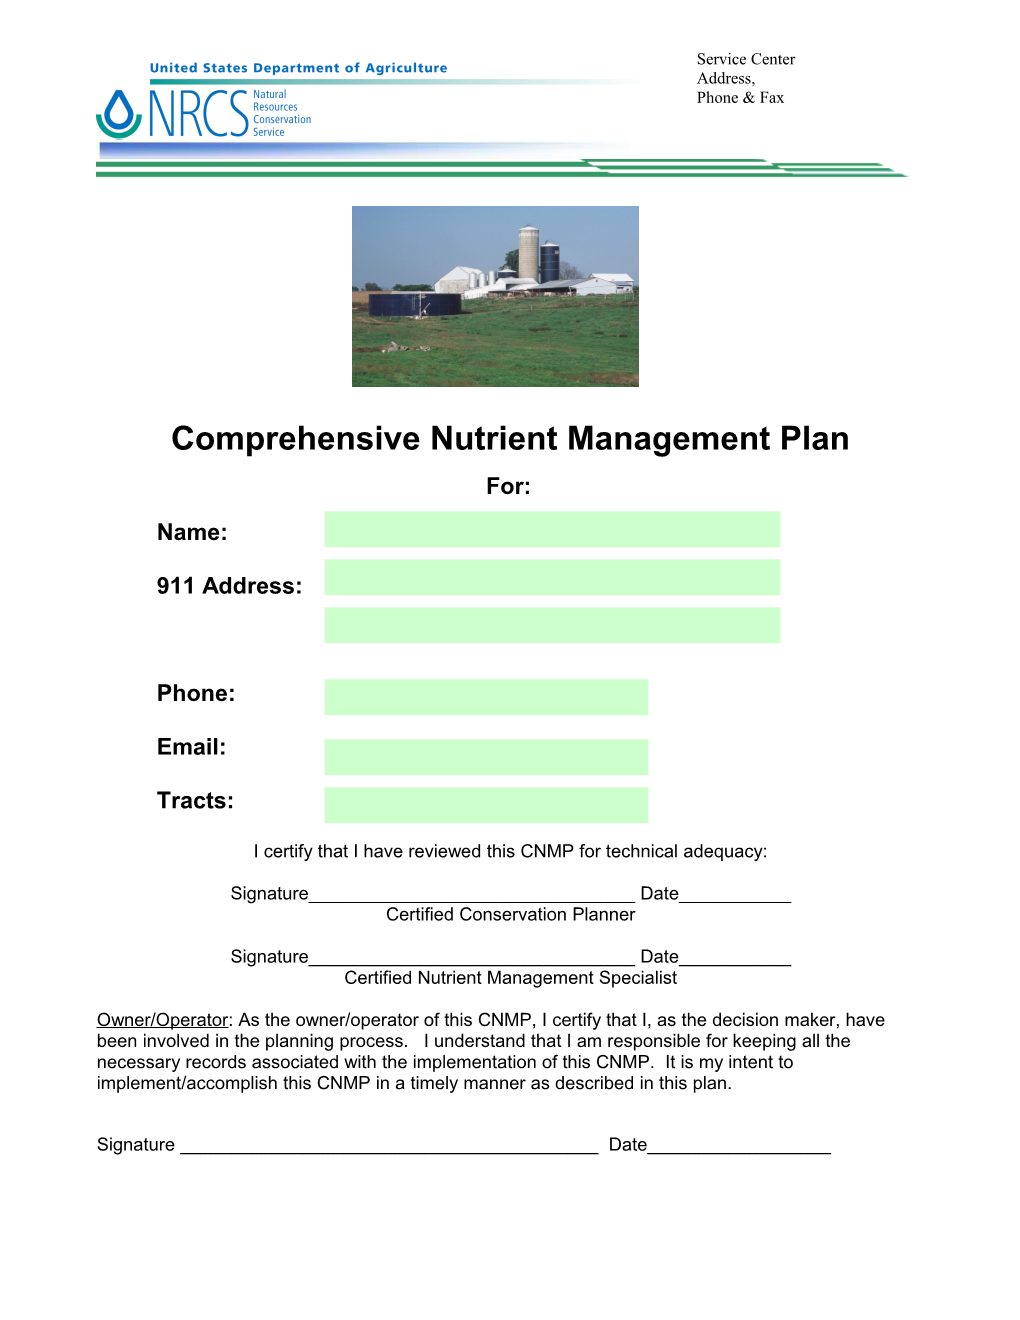 Comprenhensive Nutrient Management Plan